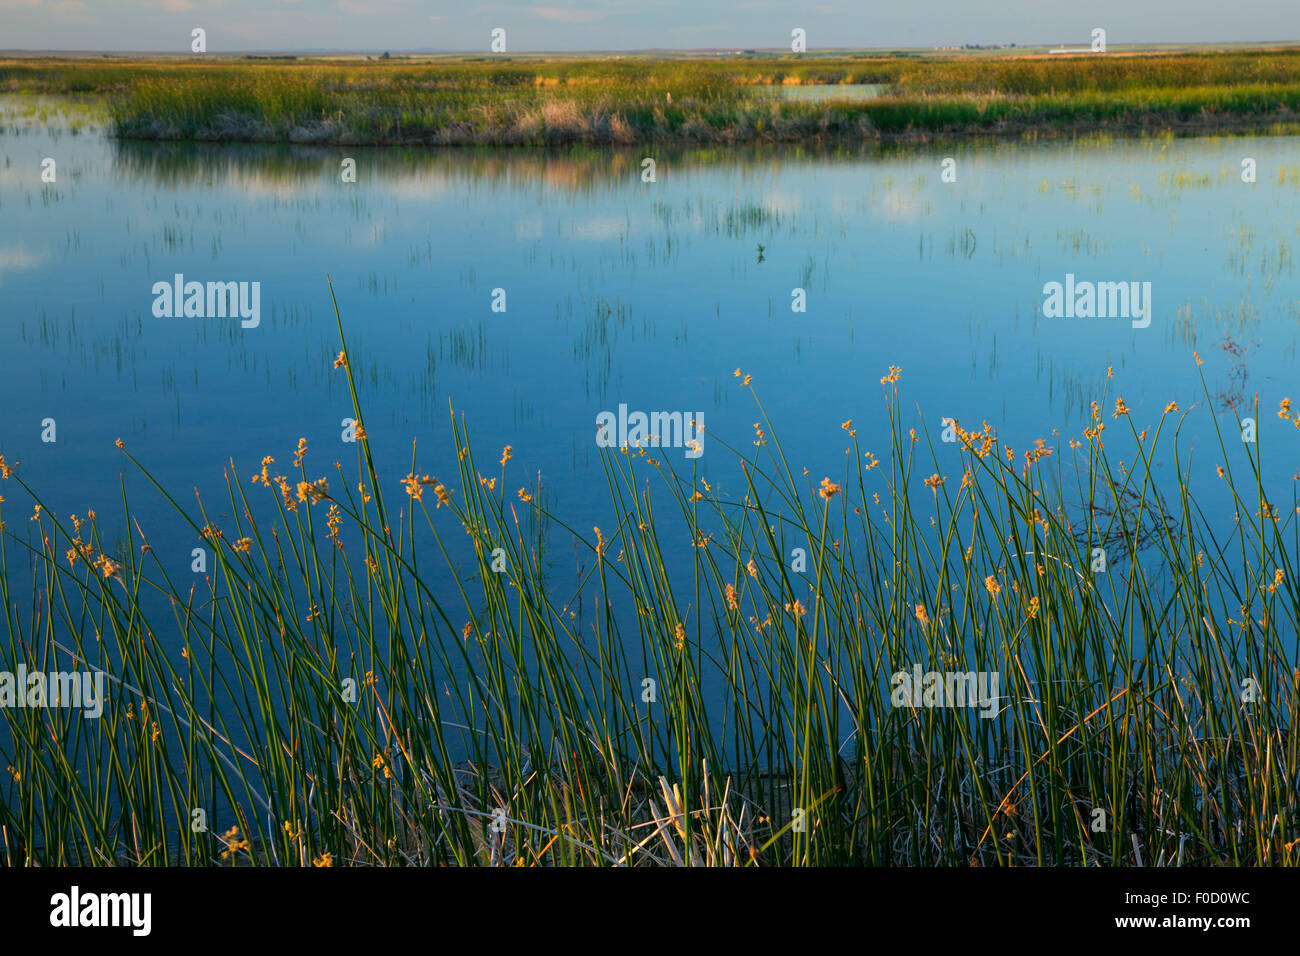 Bulrush by pond, Camas National Wildlife Refuge, Idaho Stock Photo